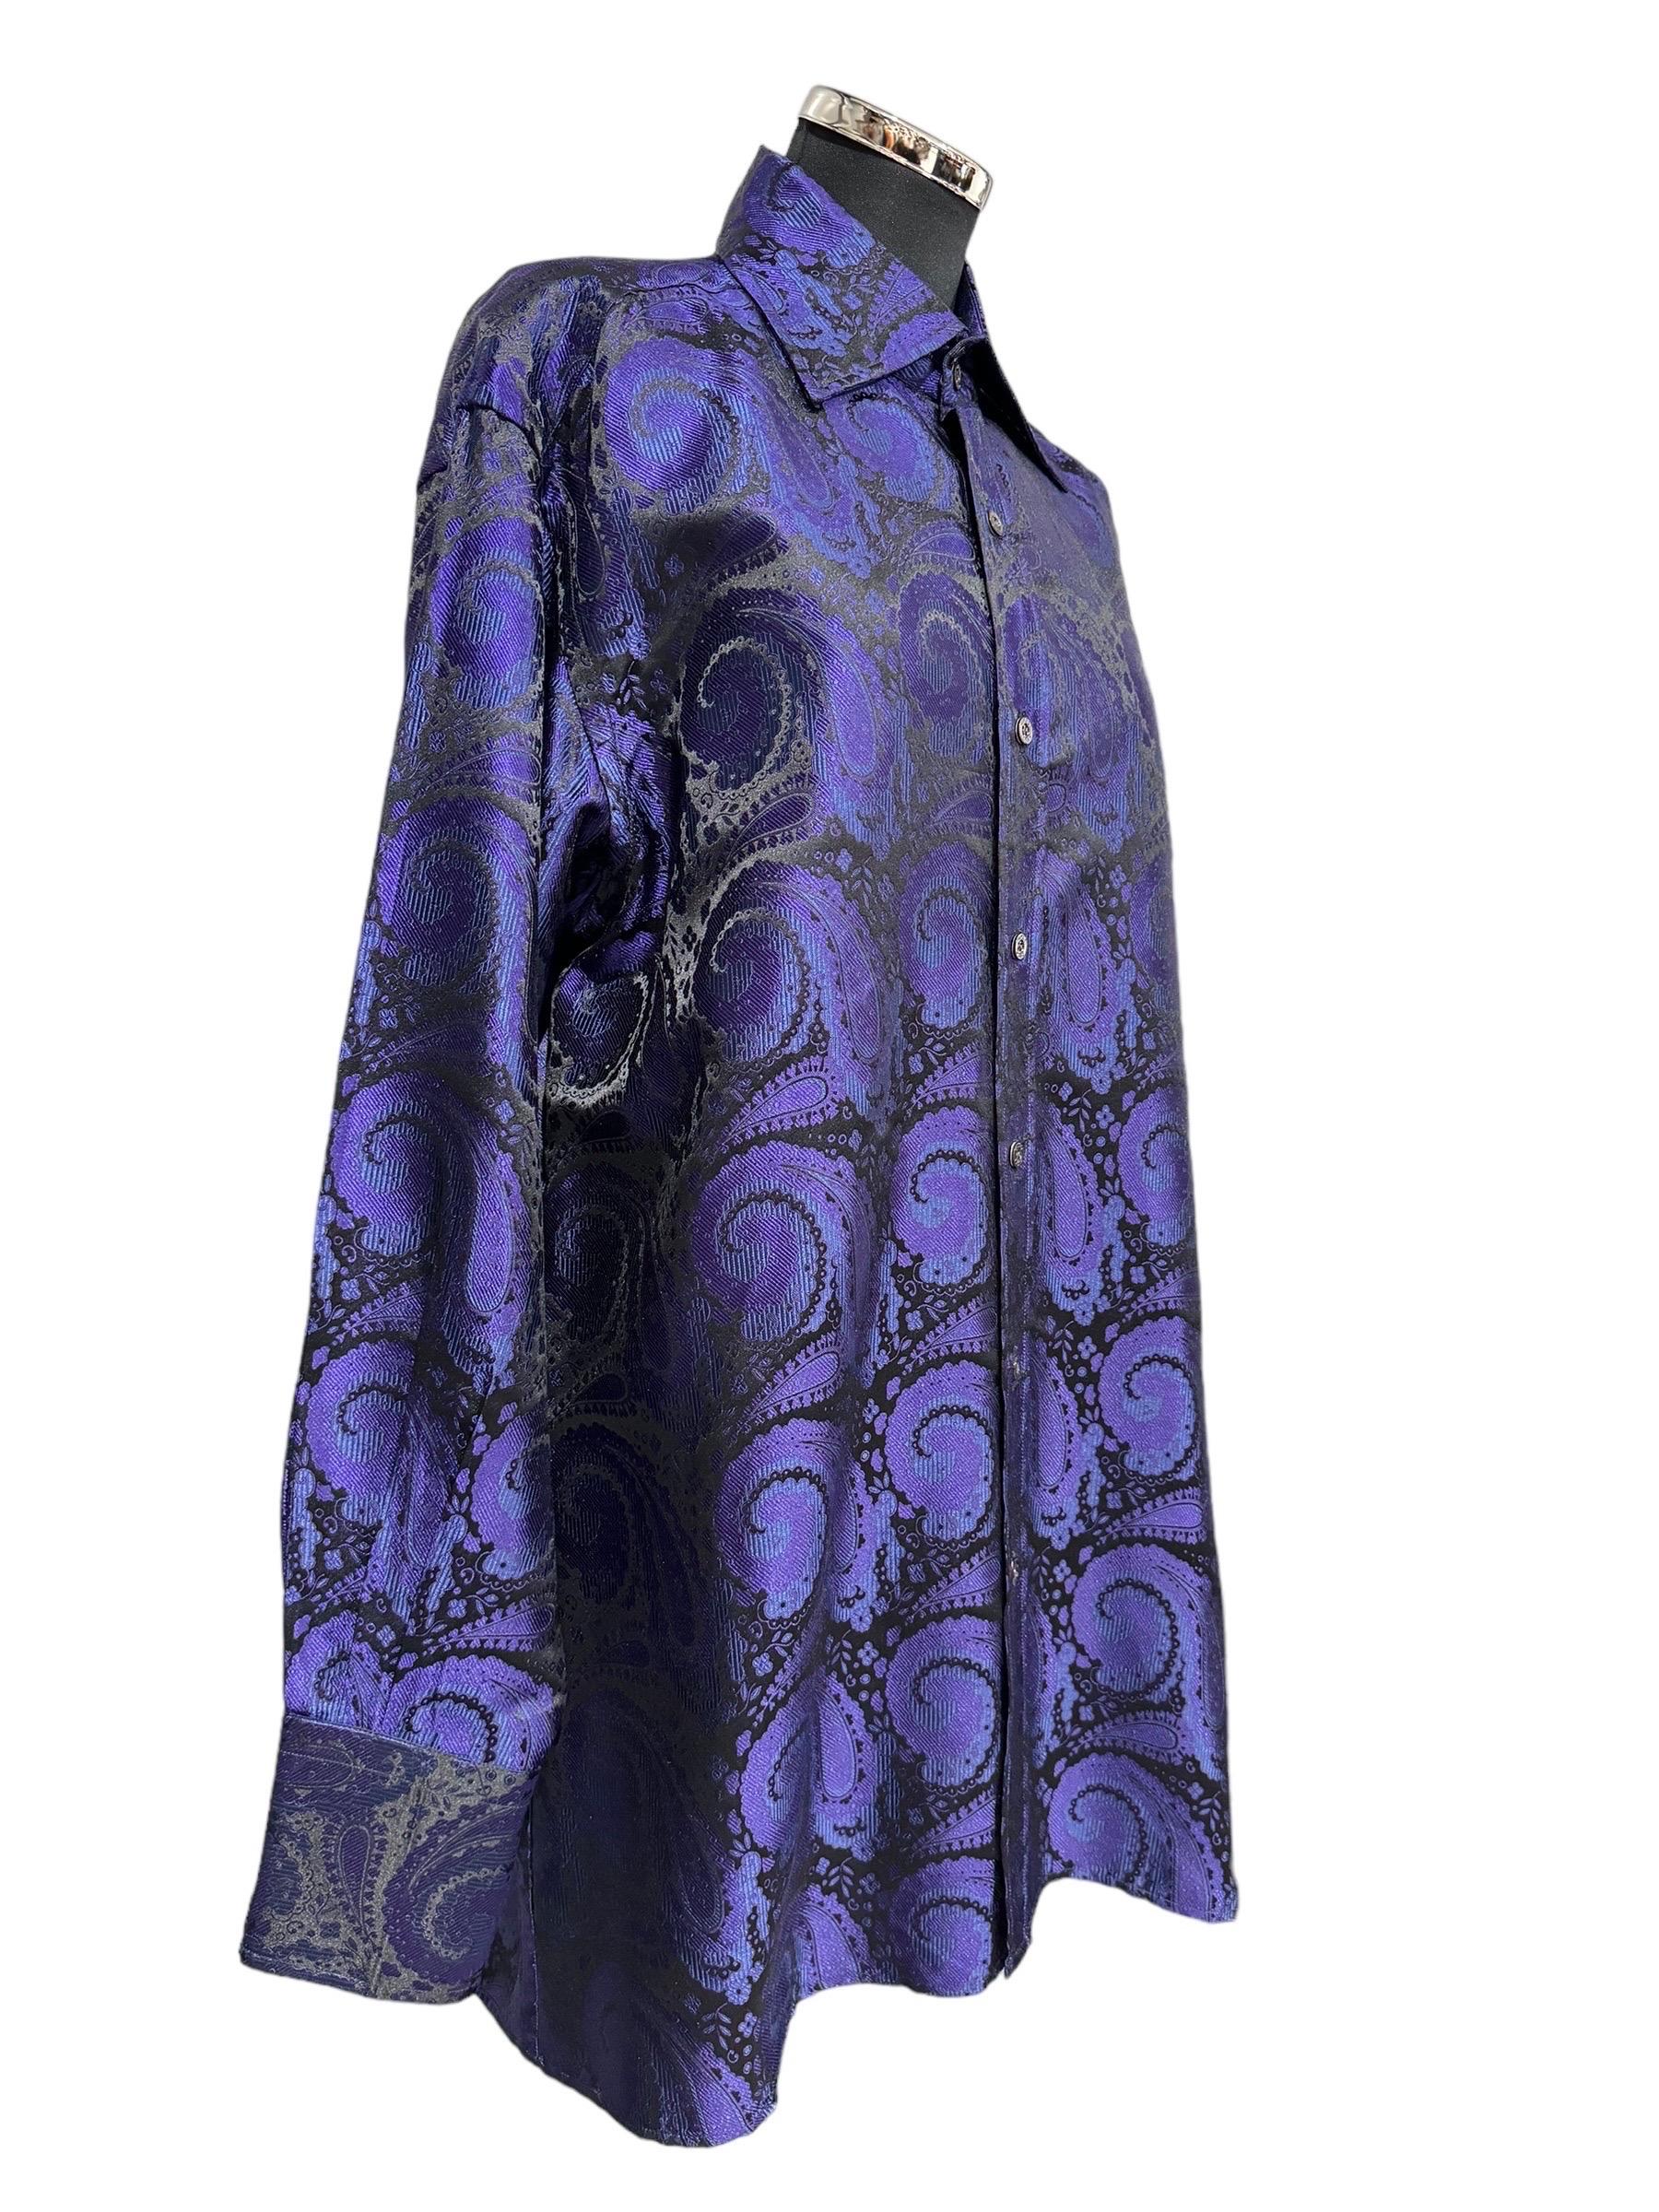 Camicia firmata Gucci, modello camicione, realizzata in seta di colore nero e viola damascato, dotata di bottoni sulla parte frontale e sui polsini. Taglia 40.

L’articolo si presenta in buone condizioni .
_____________________________
Shirt by